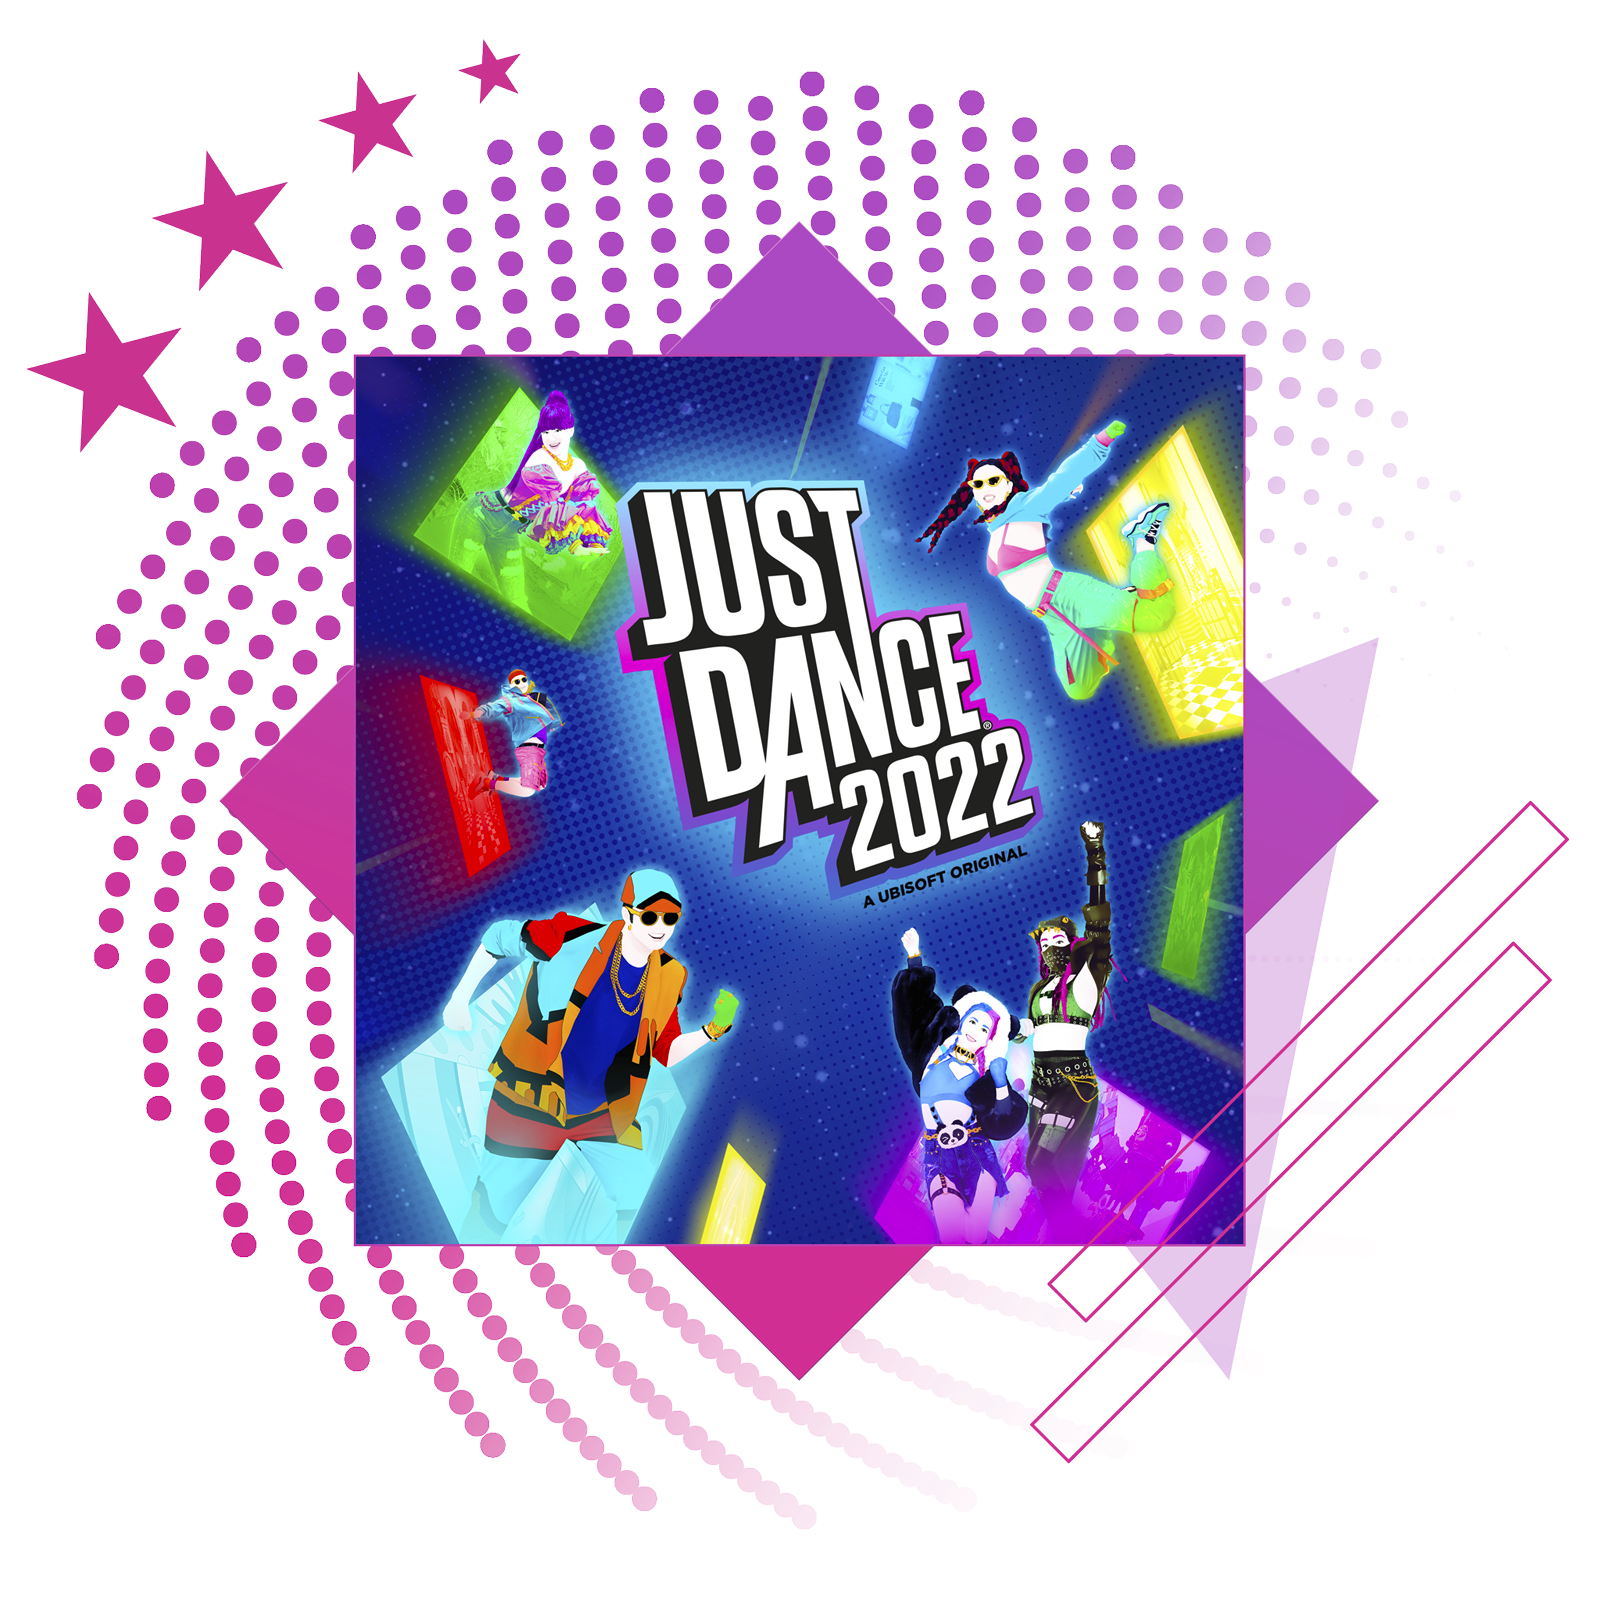 I migliori giochi musicali - Immagine in evidenza che include l'immagine principale di Just Dance 2022.